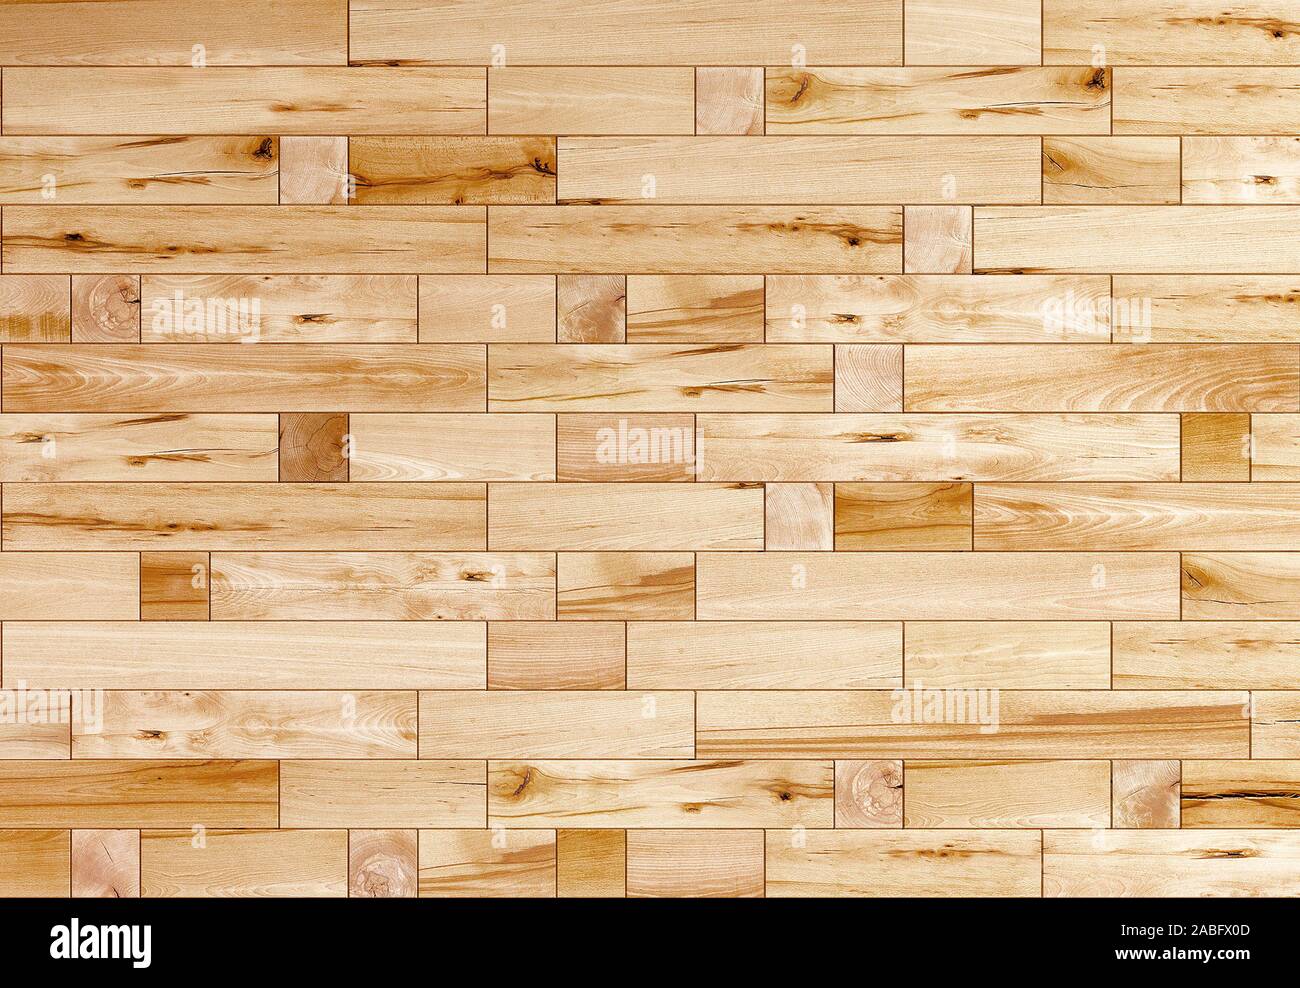 Hình nền tấm ván gỗ sẽ mang đến cho không gian của bạn một vẻ đẹp gần gũi, thân thiện, với mẫu mã đa dạng, dễ dàng tùy chỉnh để phù hợp với phòng khách, phòng ngủ hay phòng làm việc của bạn.